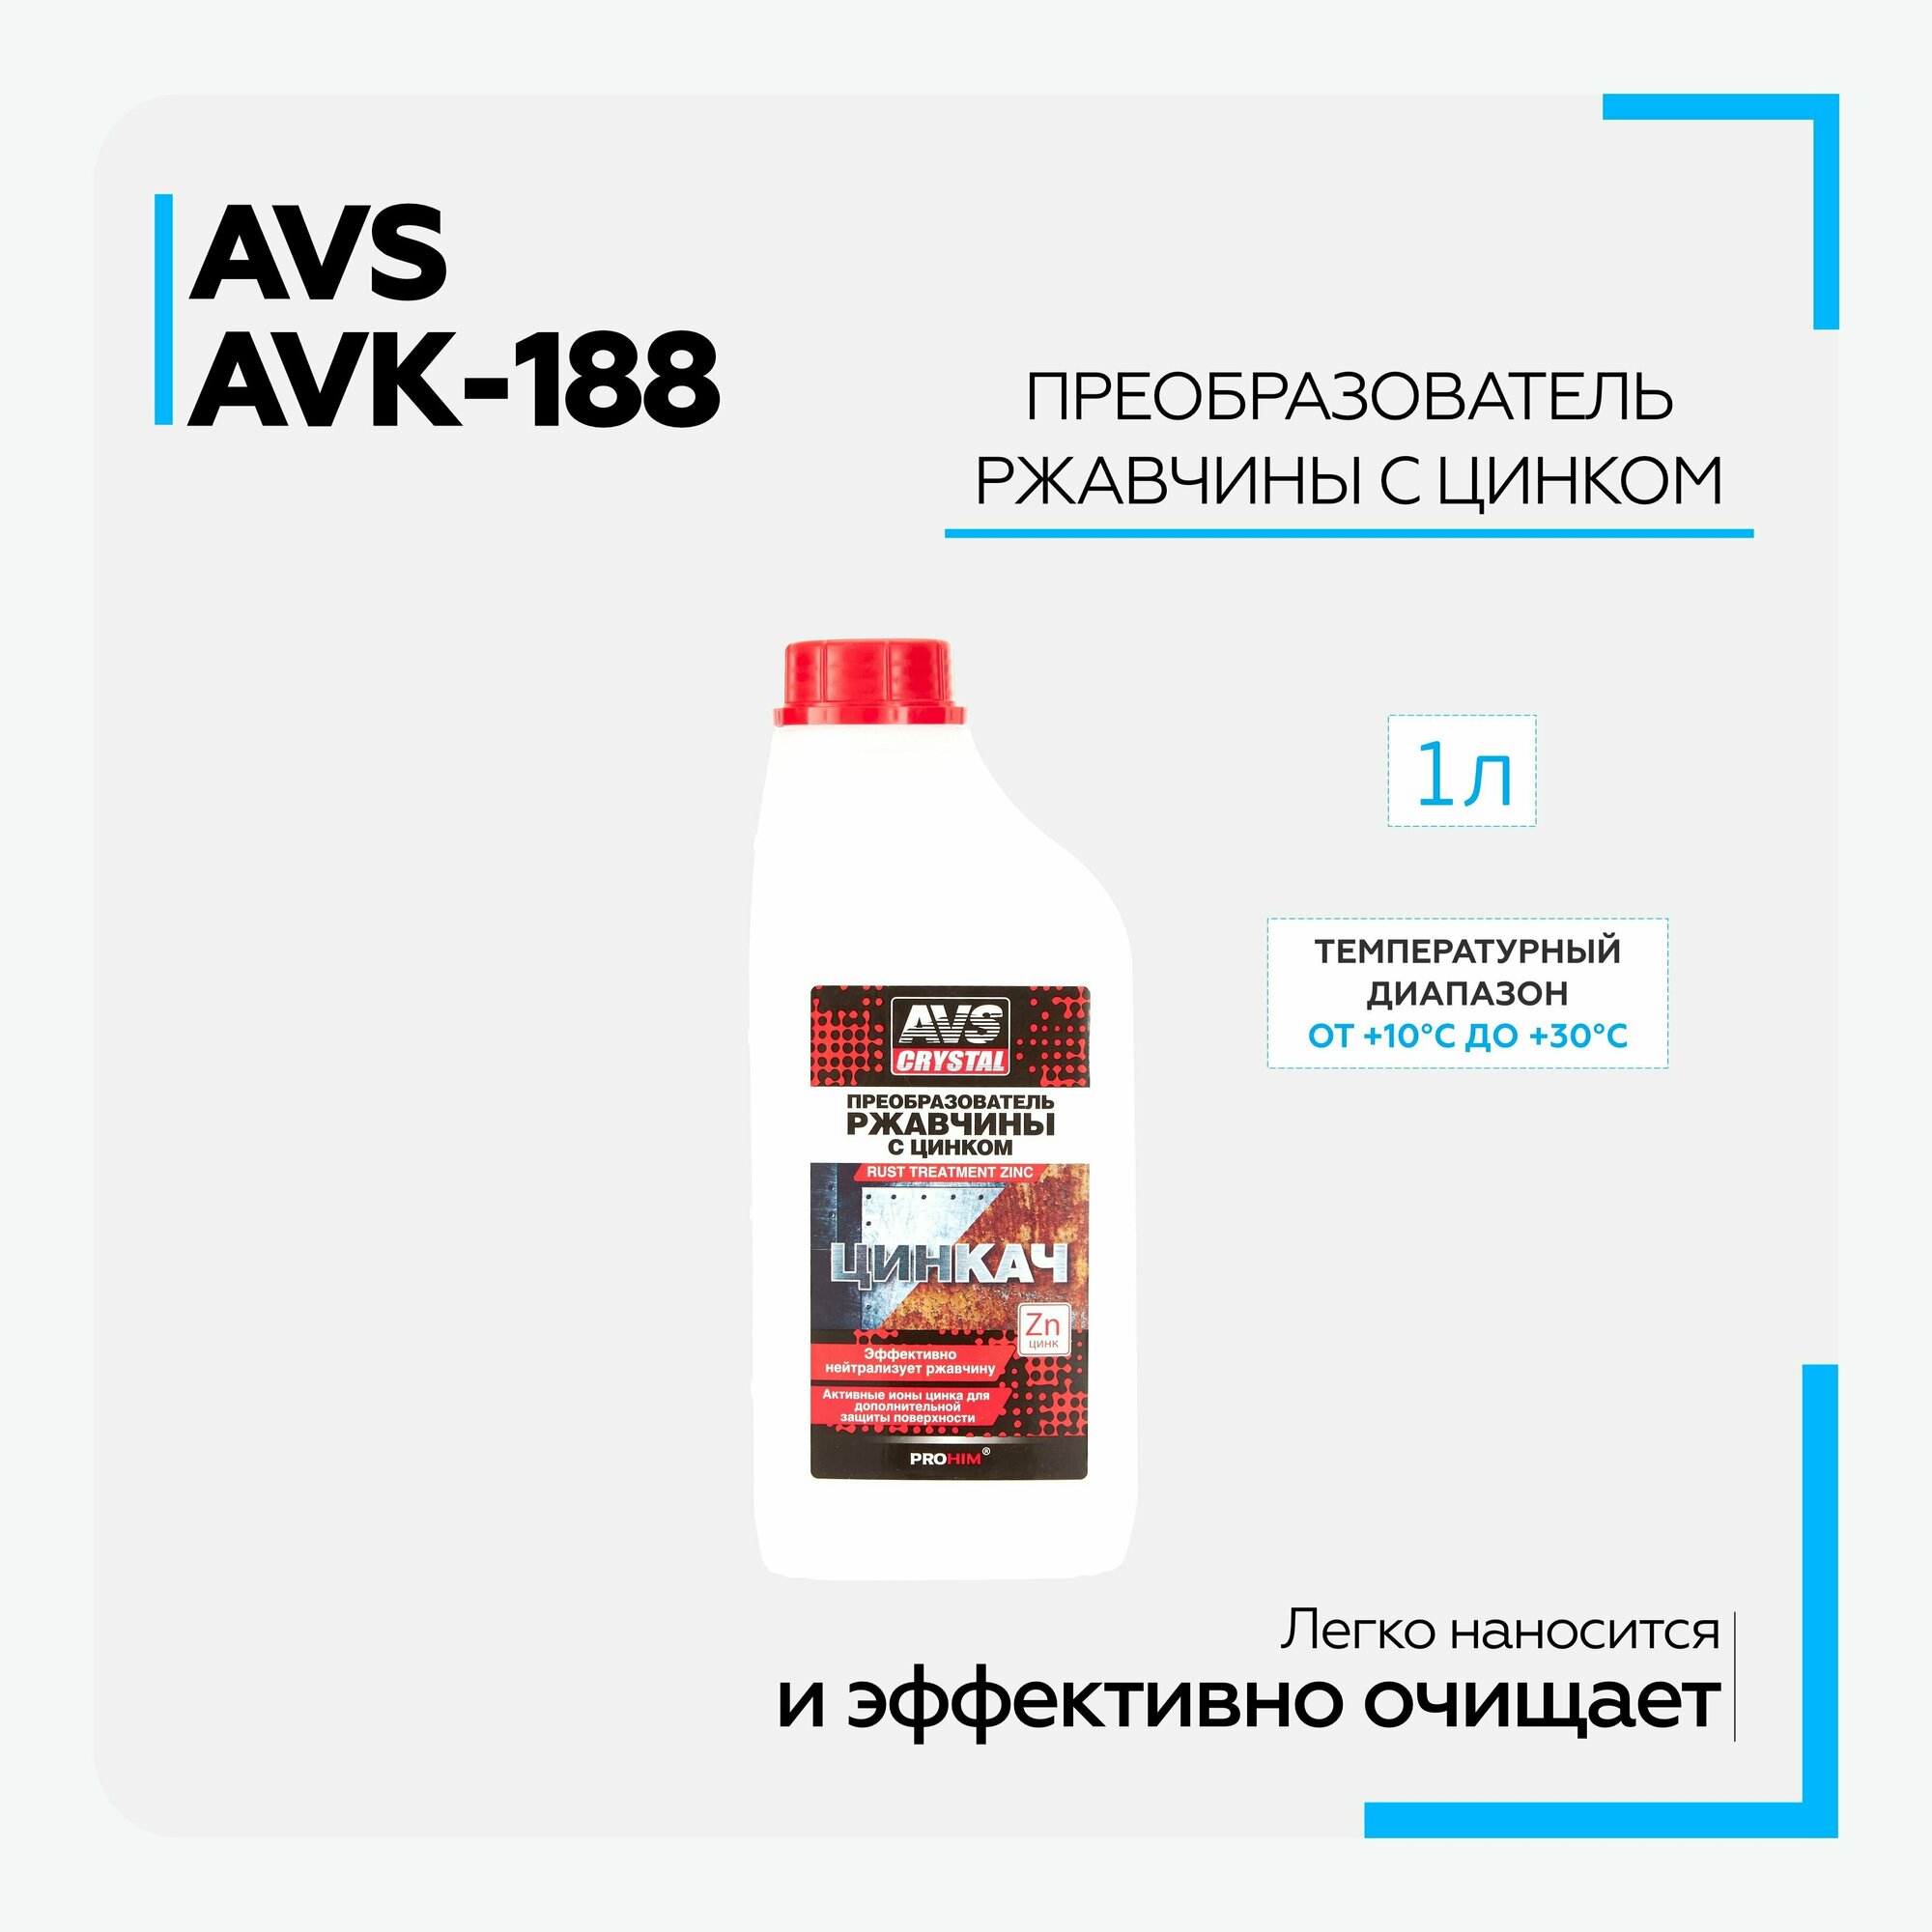 Преобразователь ржавчины для авто AVS AVK-188 "Цинкач" с цинком (1 л) A07488S